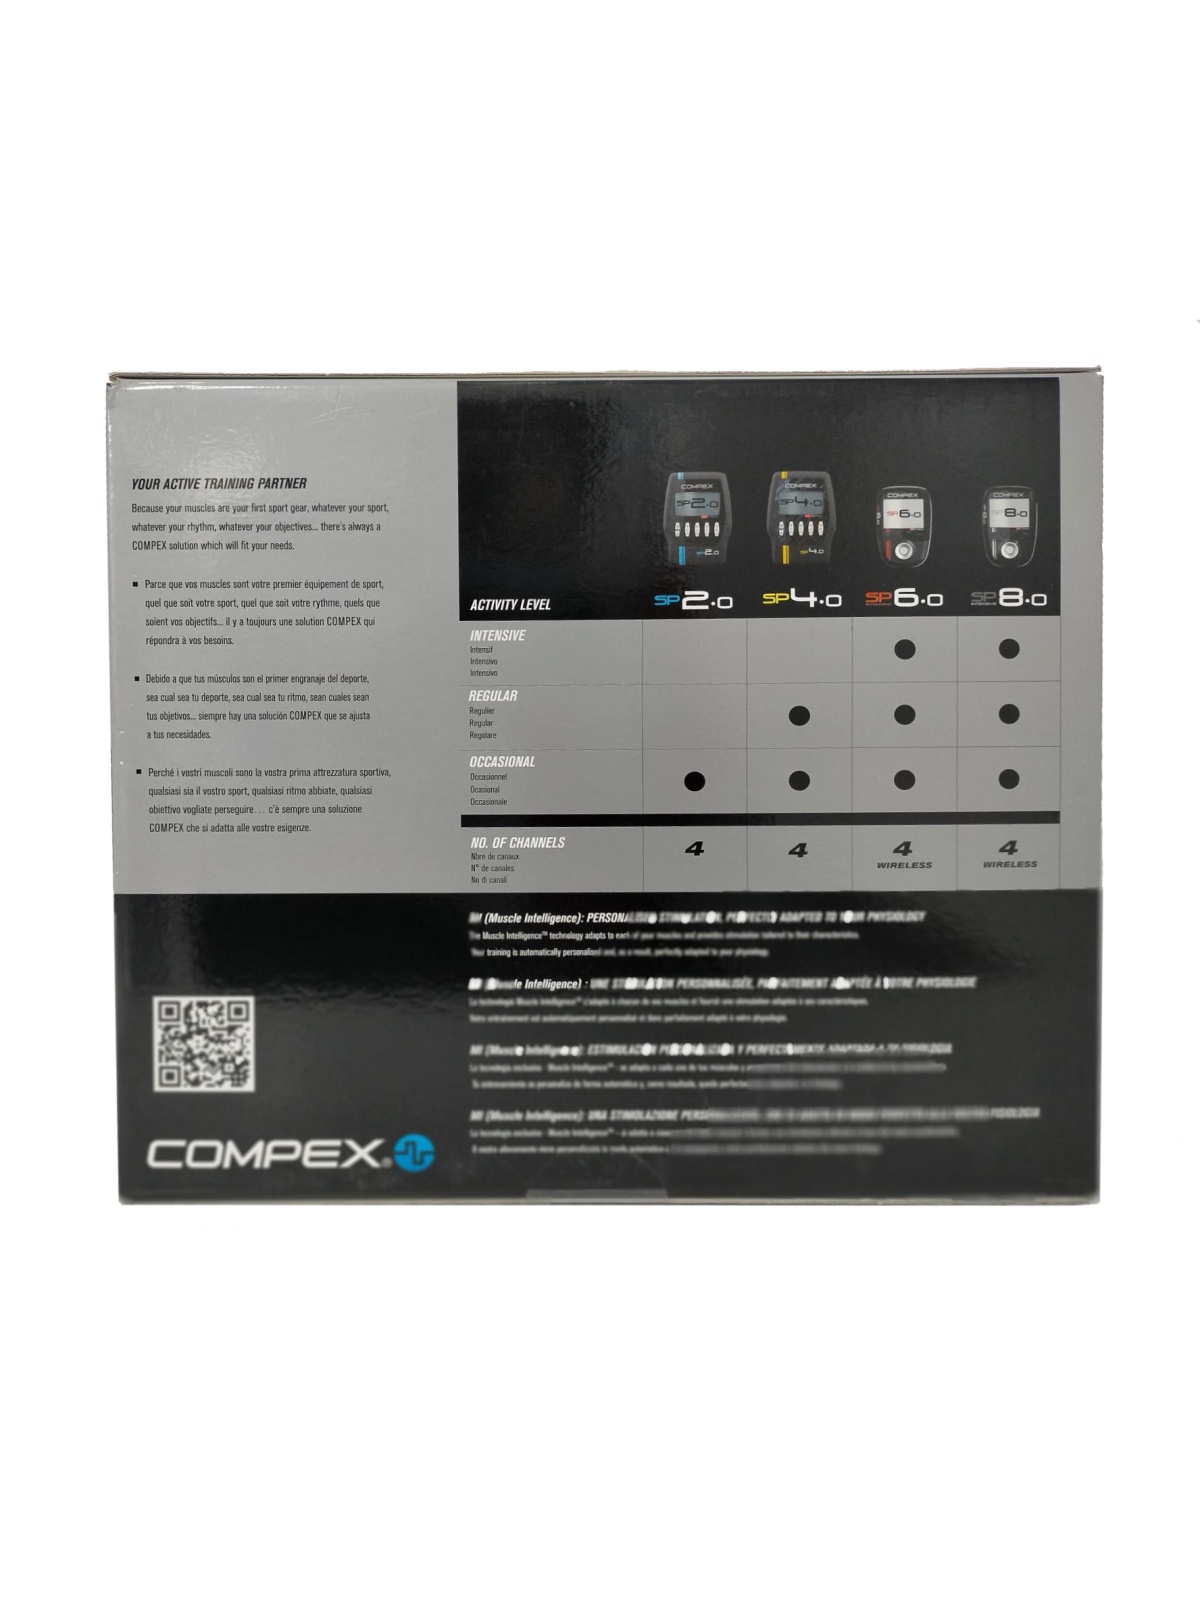 Electro-estimulador Compex 6.0